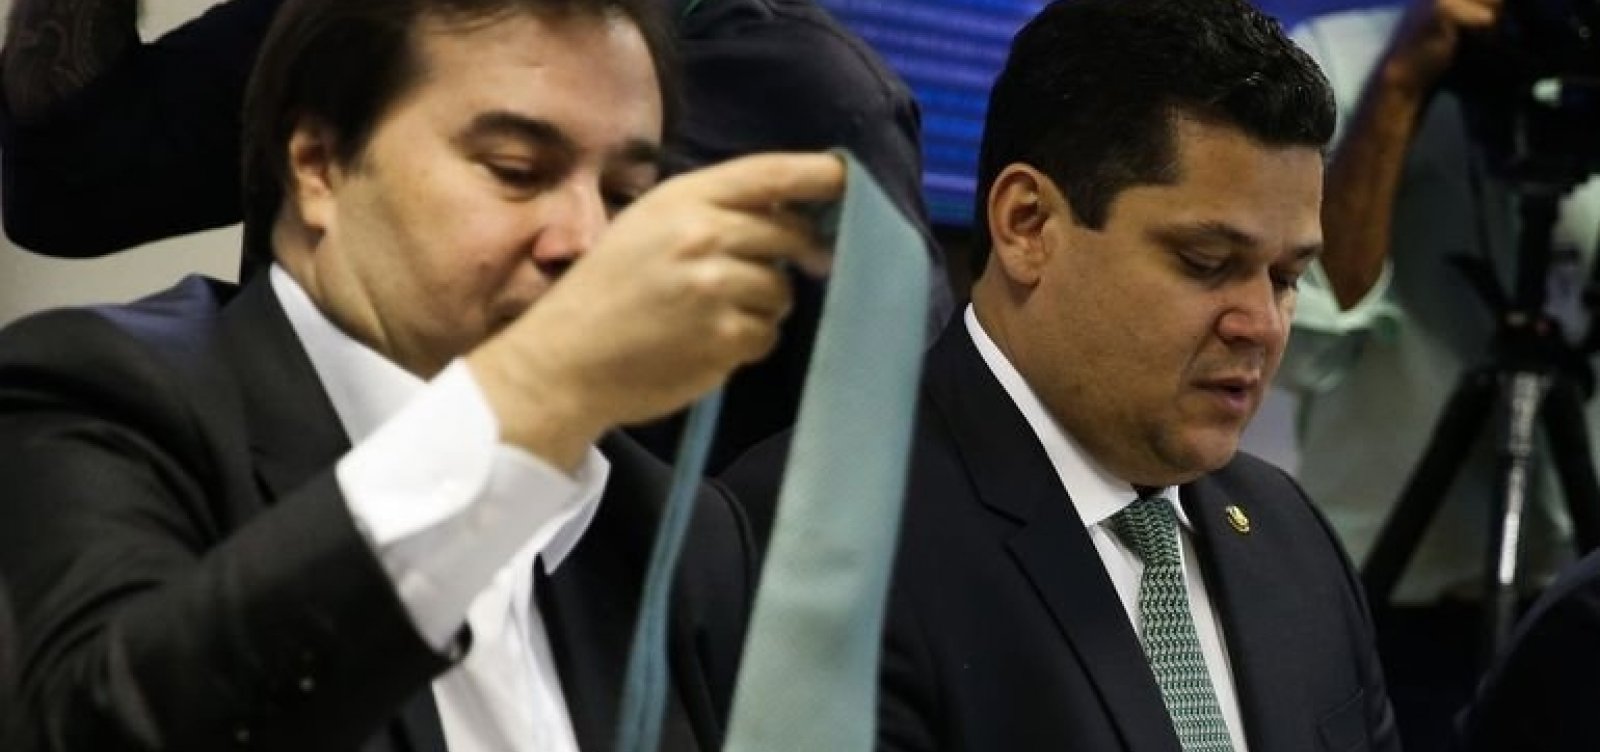 Maia critica 'equívoco' e Alcolumbre cobra liderança 'séria' após pronunciamento de Bolsonaro